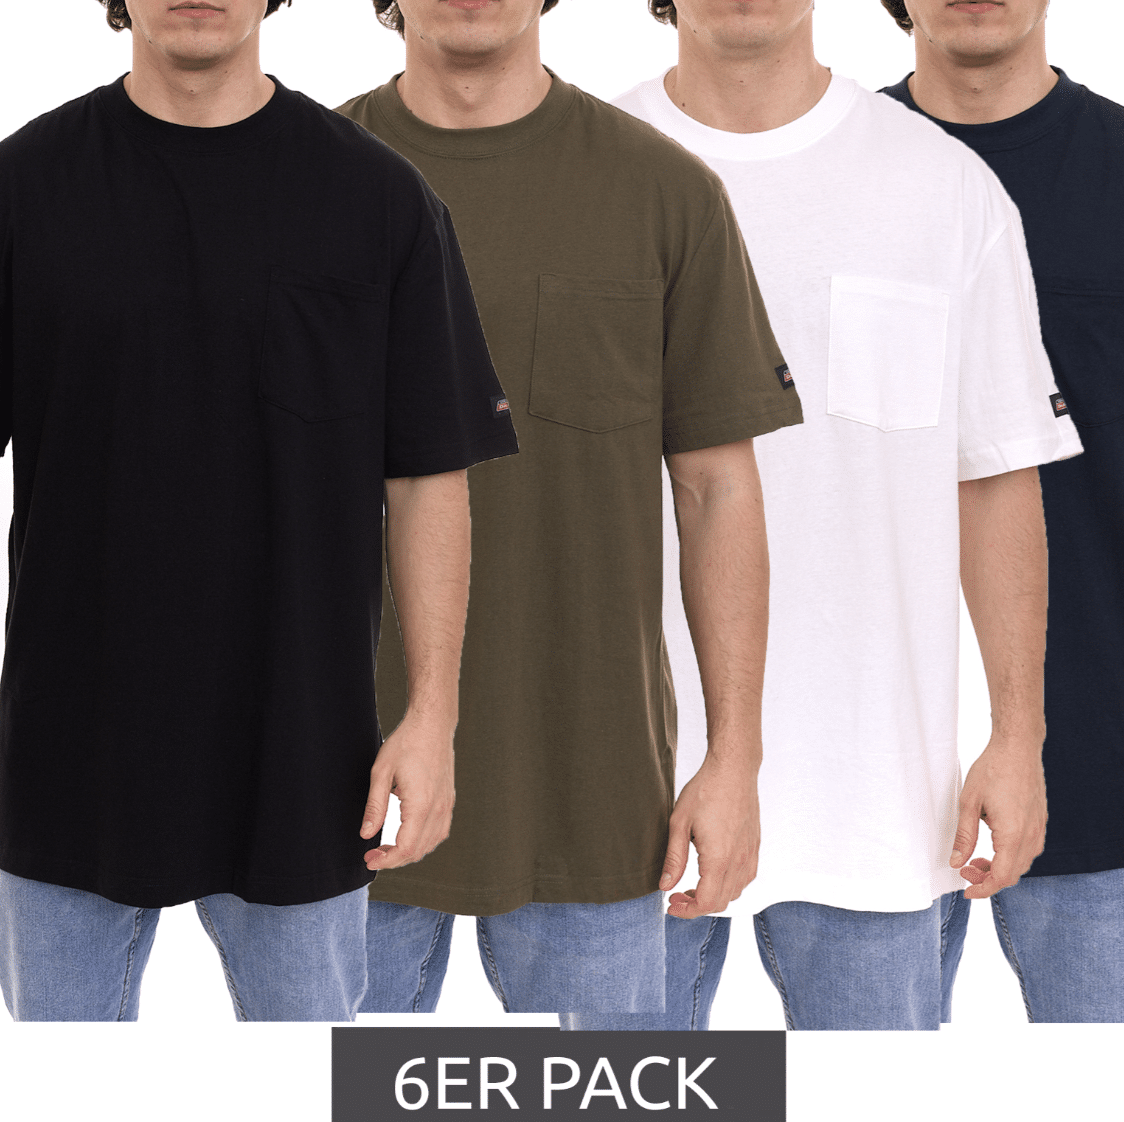 Thumbnail letzten Größen - schnell sein! 👕 nur 3,33€ pro Shirt ✔️ Dickies Basic Herren T-Shirts 6er Pack für 19,99€ (statt 50€) 🎉